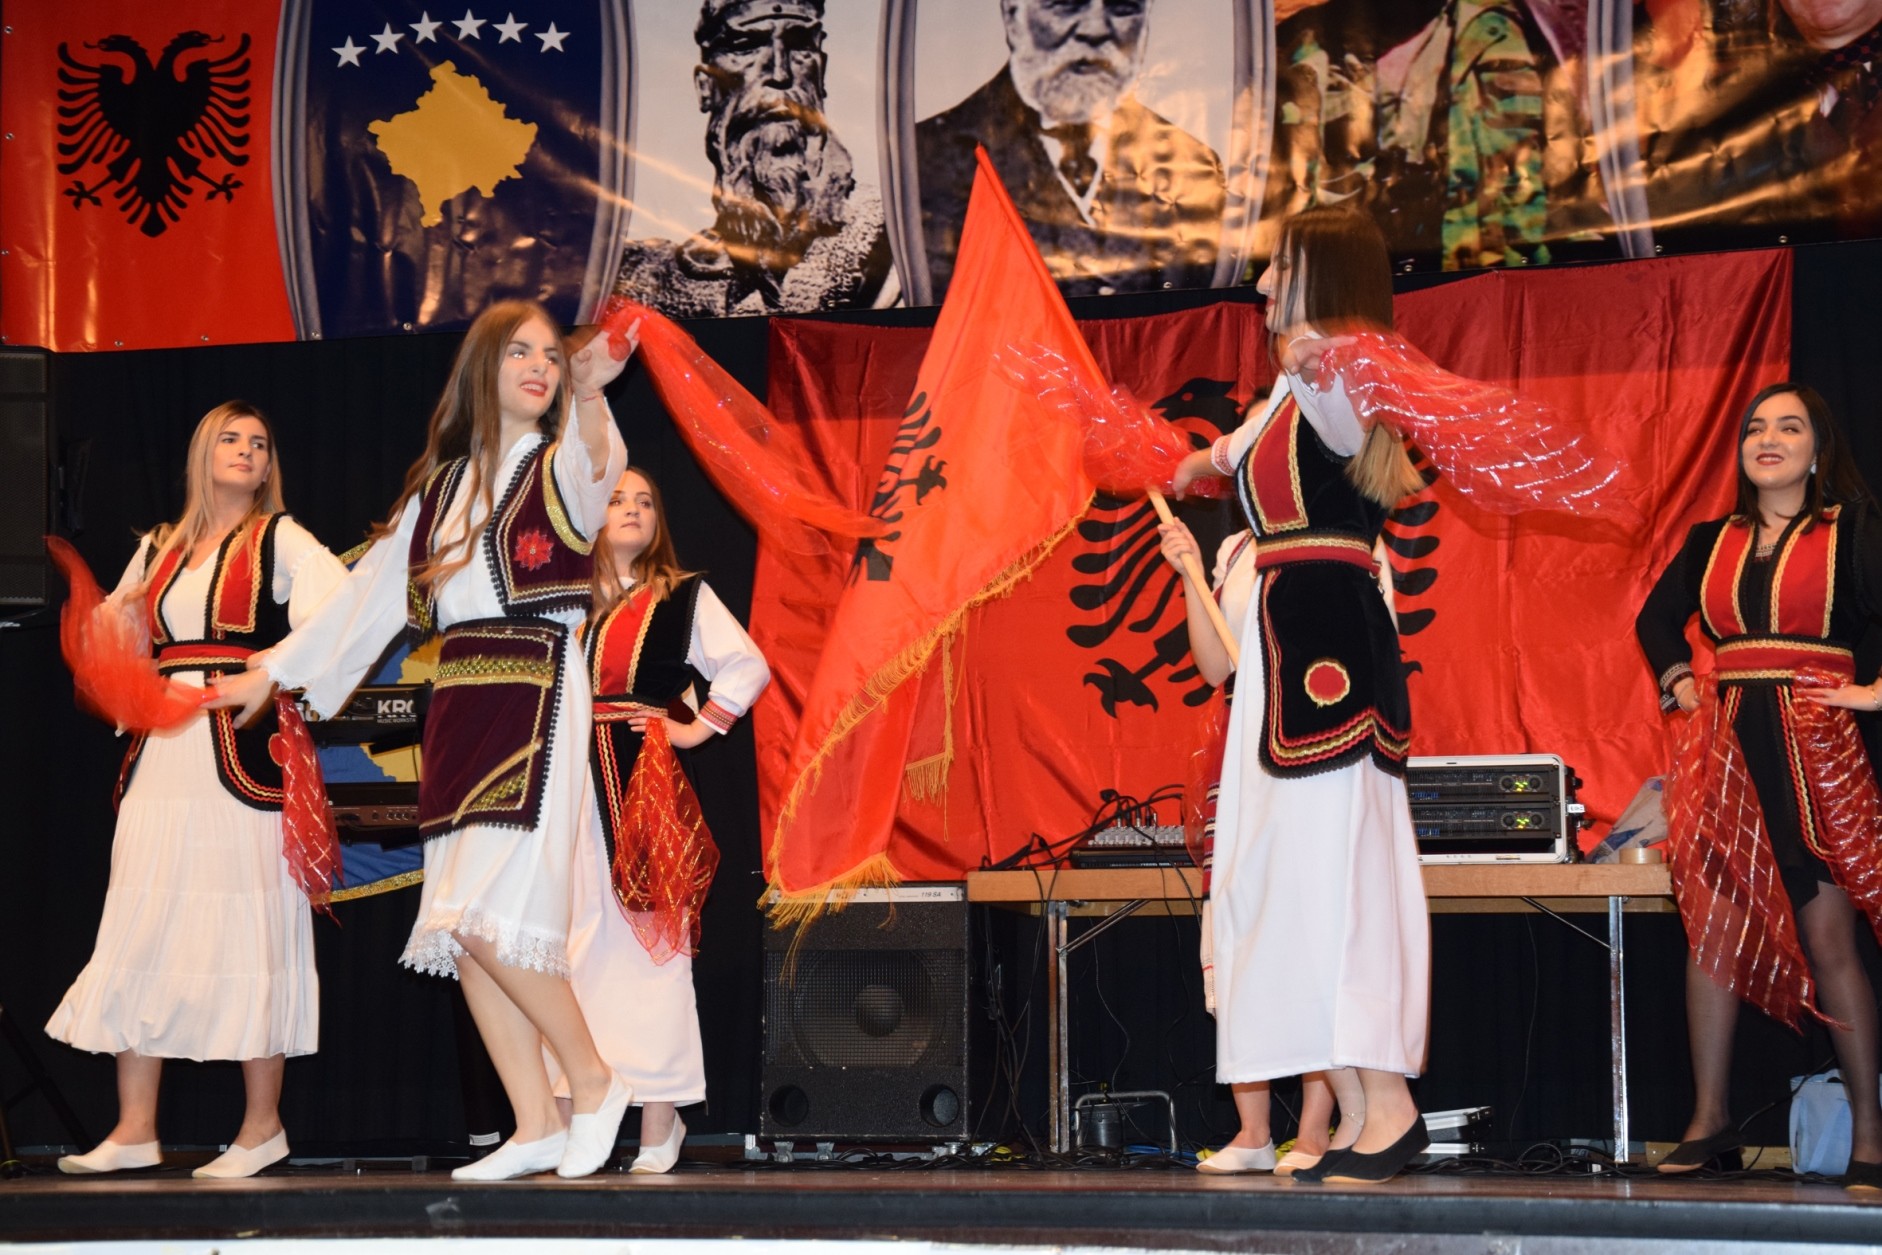 Shqiptarët në Thun festojnë 10 vjetorin e Pavarësisë